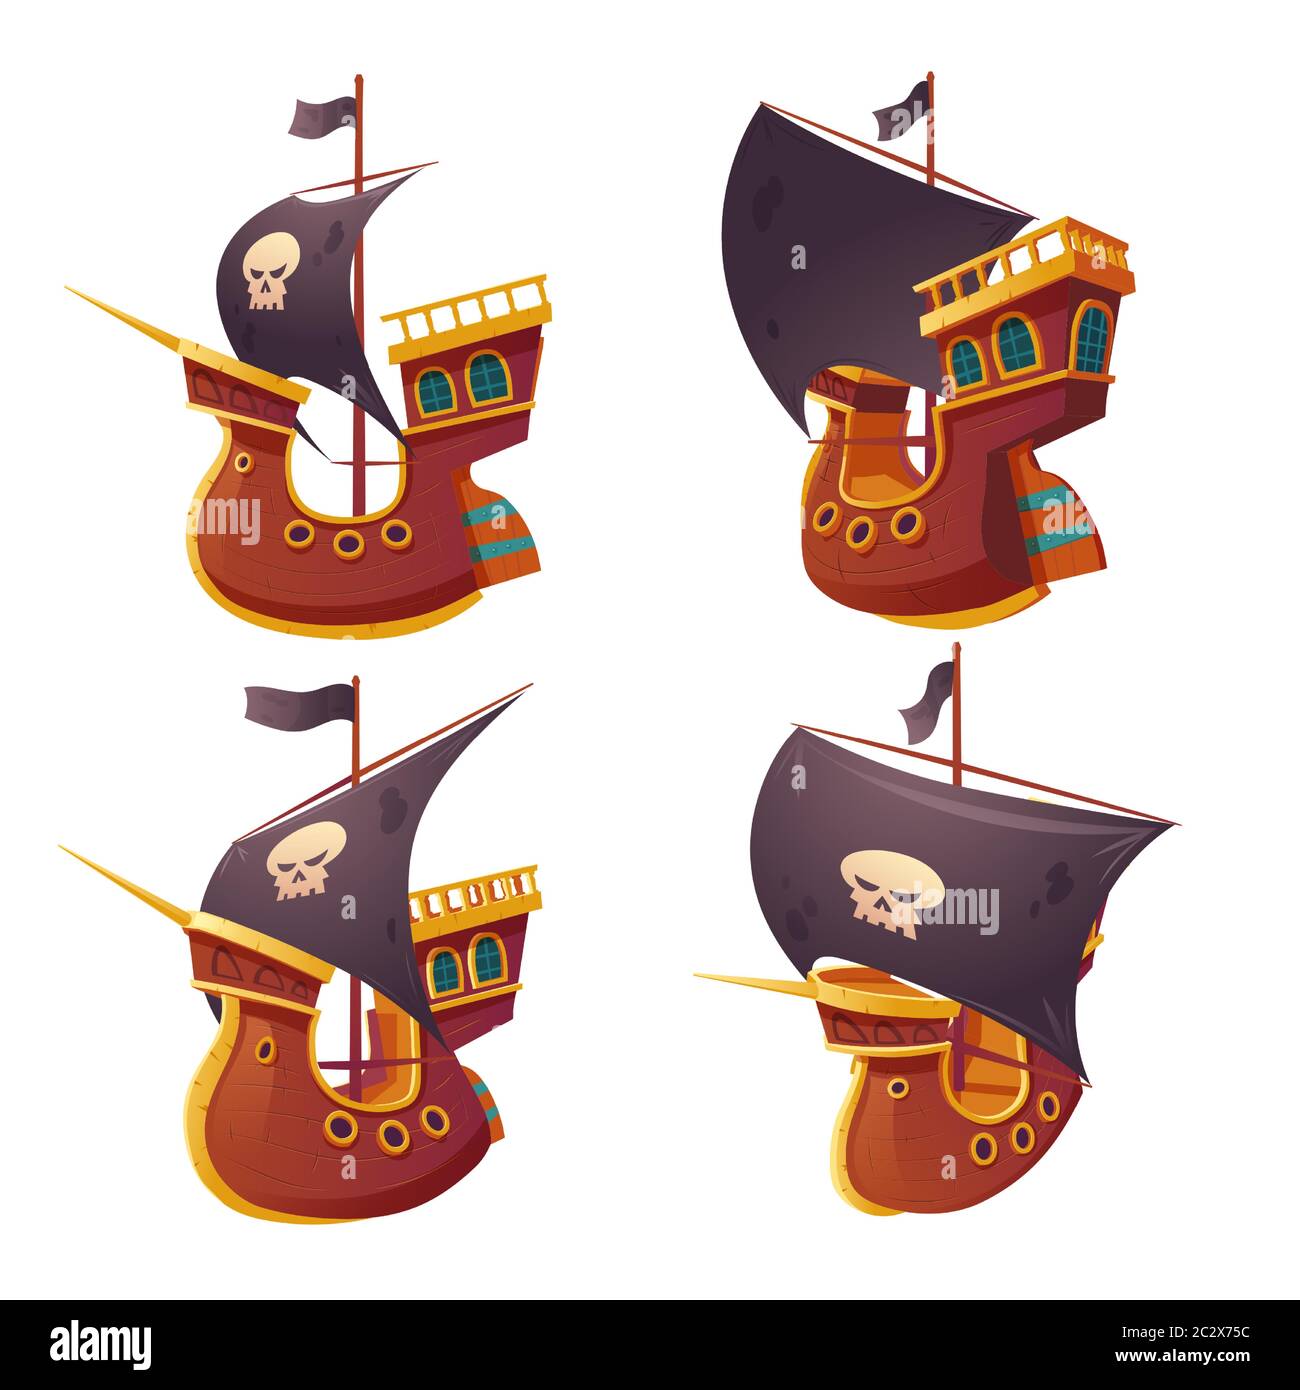 Piratenschiff auf weißem Hintergrund isoliert gesetzt. Holzboot mit schwarzen Segeln, Kanonenlöchern und Segelyards. Corvette oder Fregatte mit Buccaneer Flagge Schädel Stock Vektor